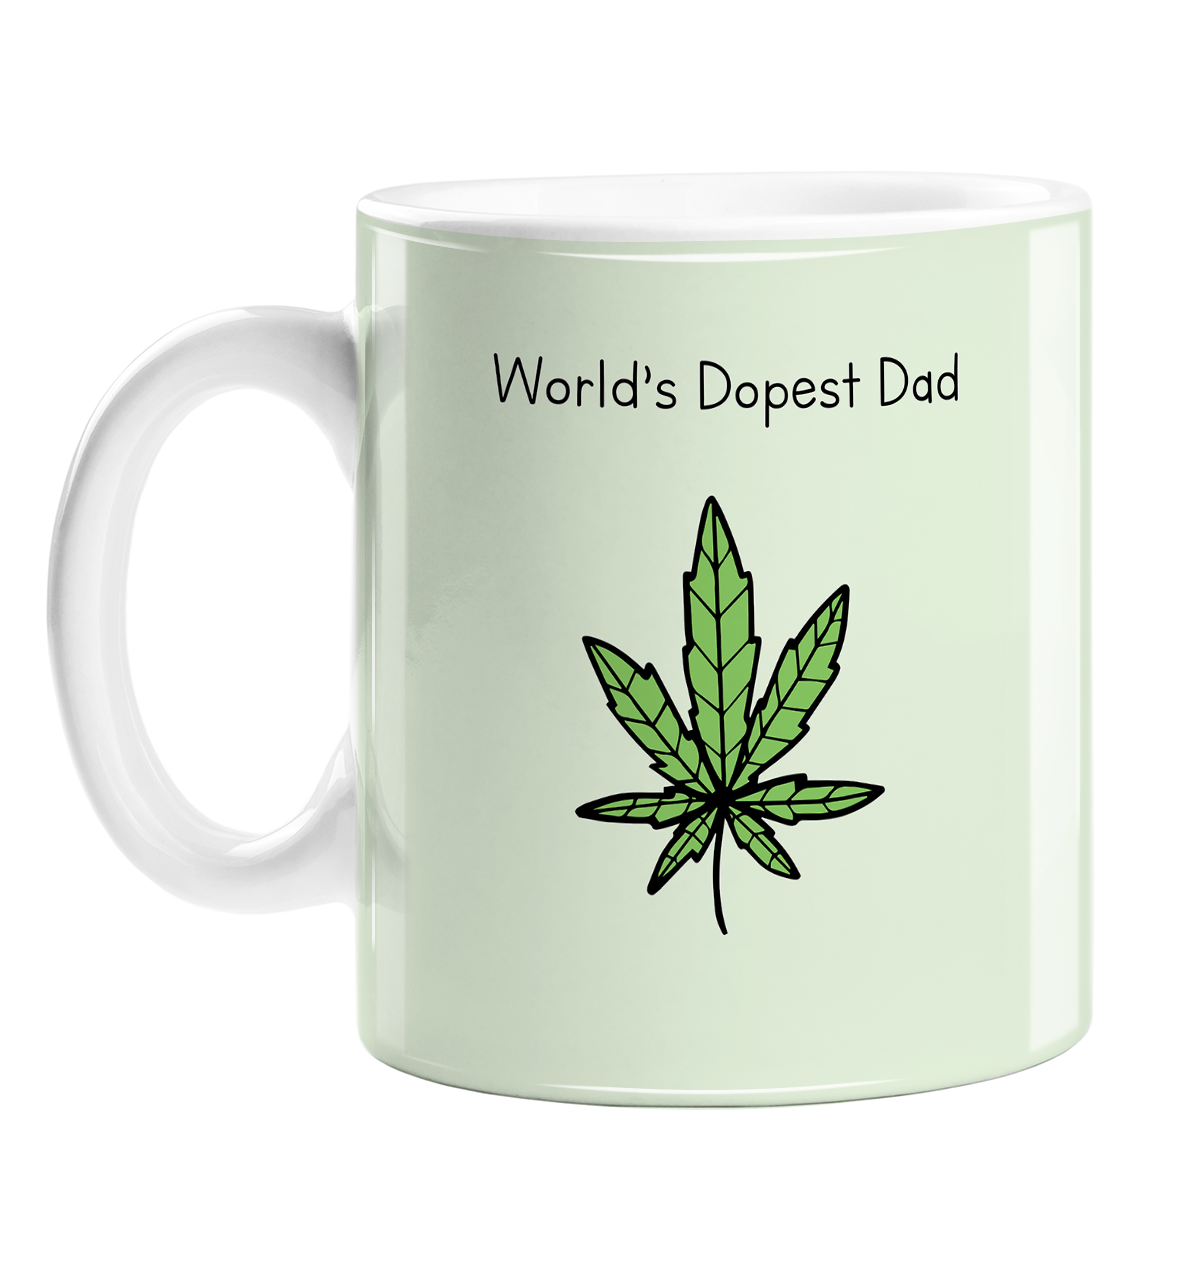 https://lemonloco.com/cdn/shop/products/worlds-dopest-dad-mug.png?v=1607443621